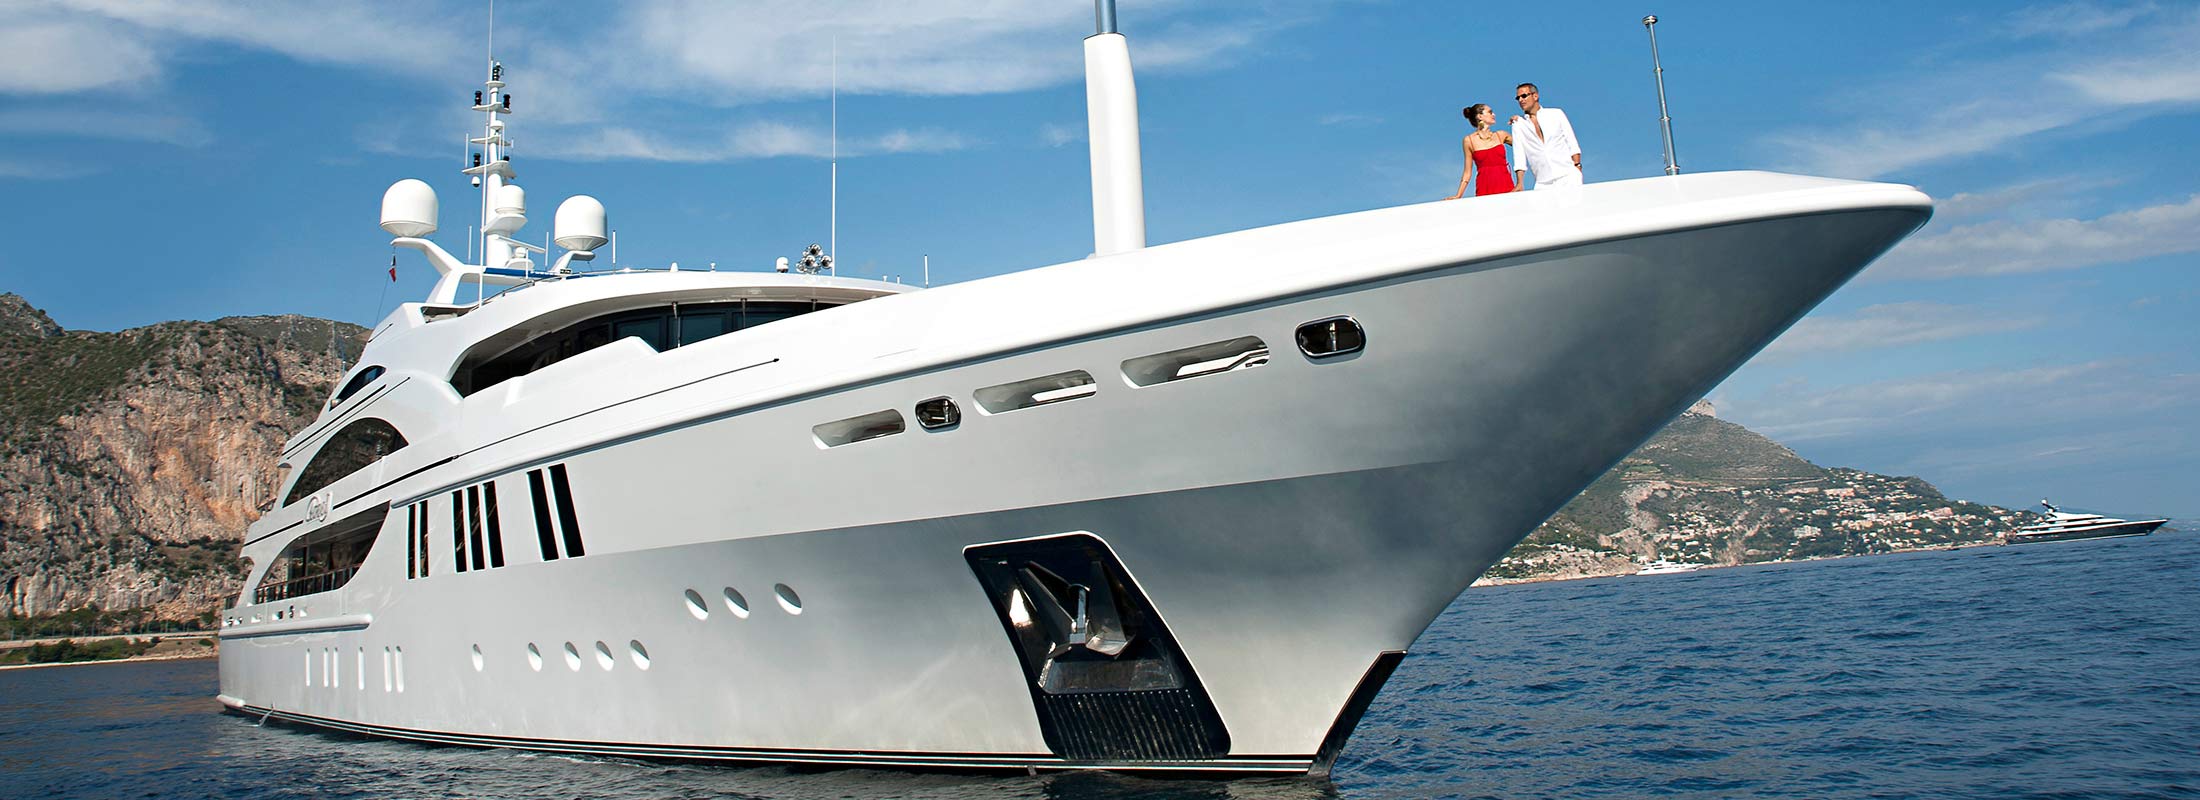 Andreas-L-Motor-Yacht-for-charter-slider-02.jpg